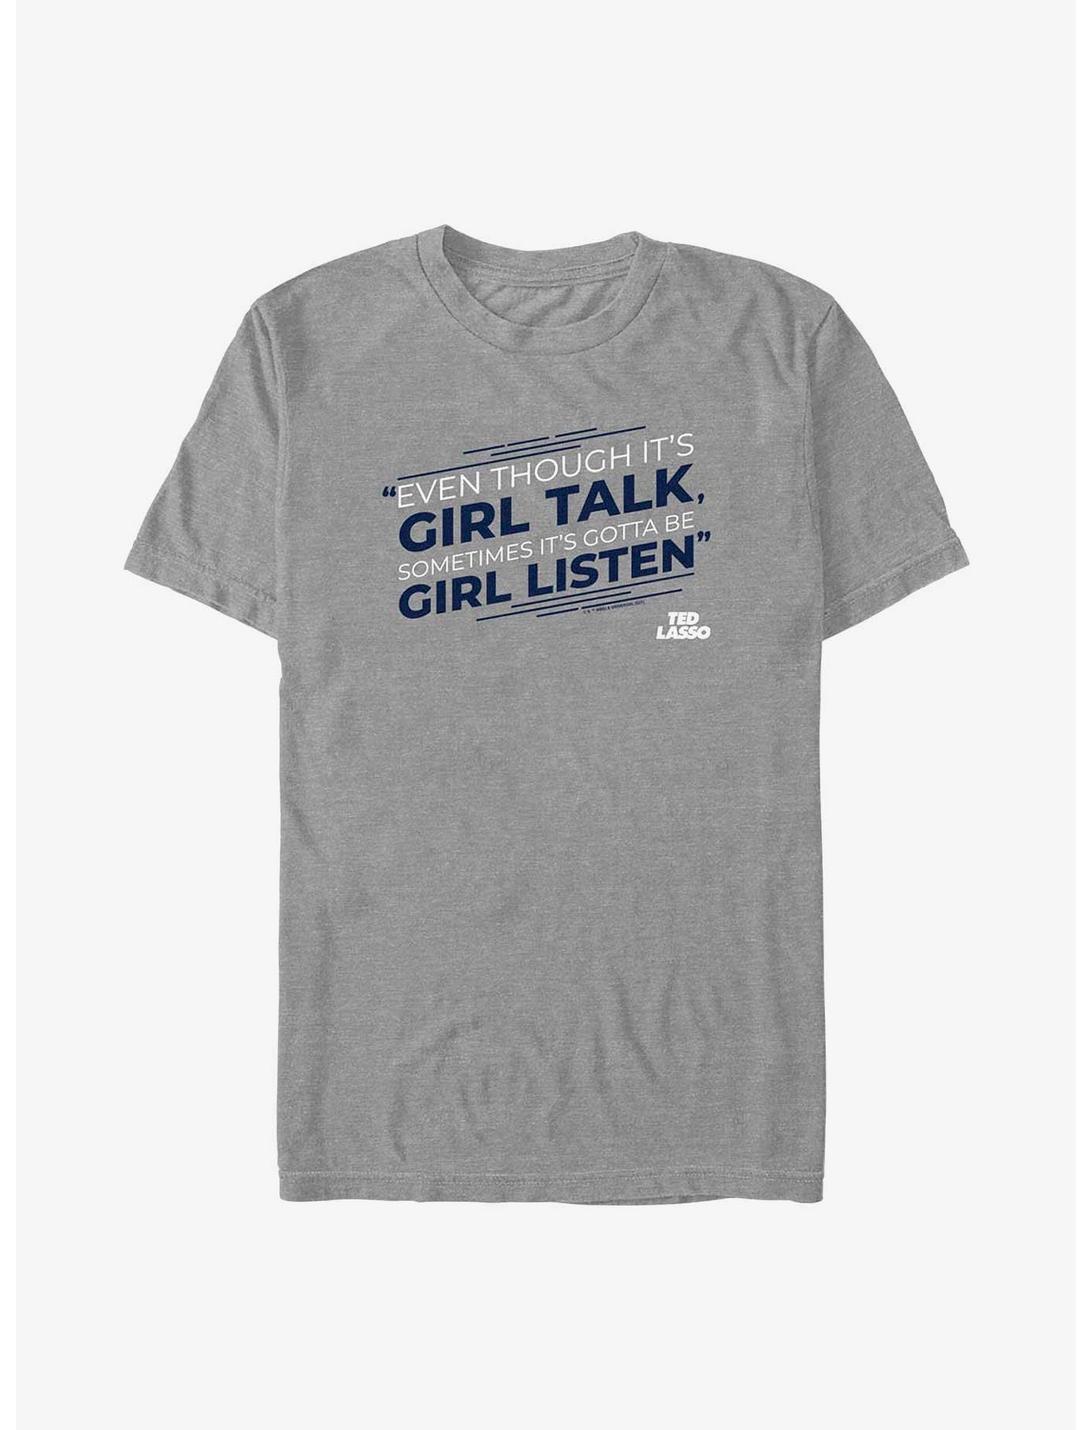 Ted Lasso Girl Talk Girl Listen T-Shirt, DRKGRY HTR, hi-res